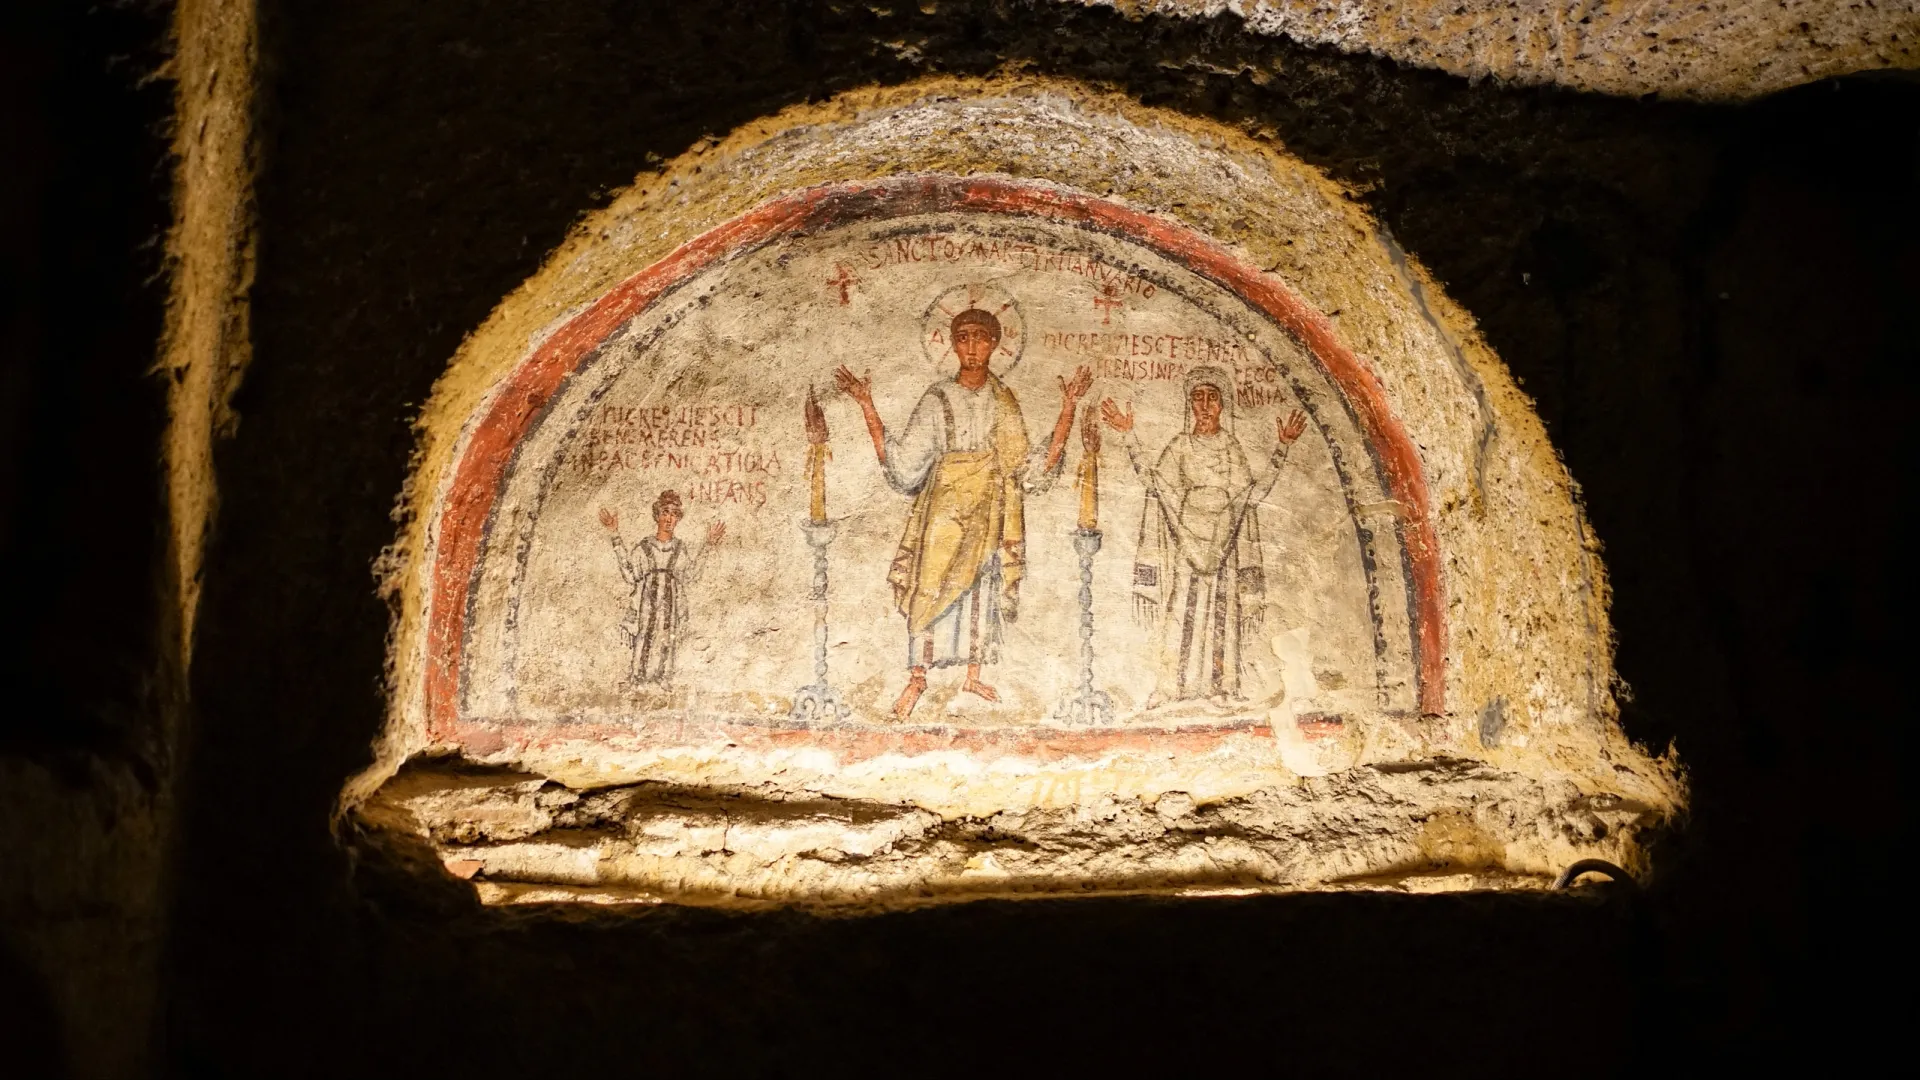 Погребальная живопись с религиозными мотивами в катакомбах Сан-Дженнаро, Неаполь. Фото: The Road Provides/Shutterstock/Fotodom